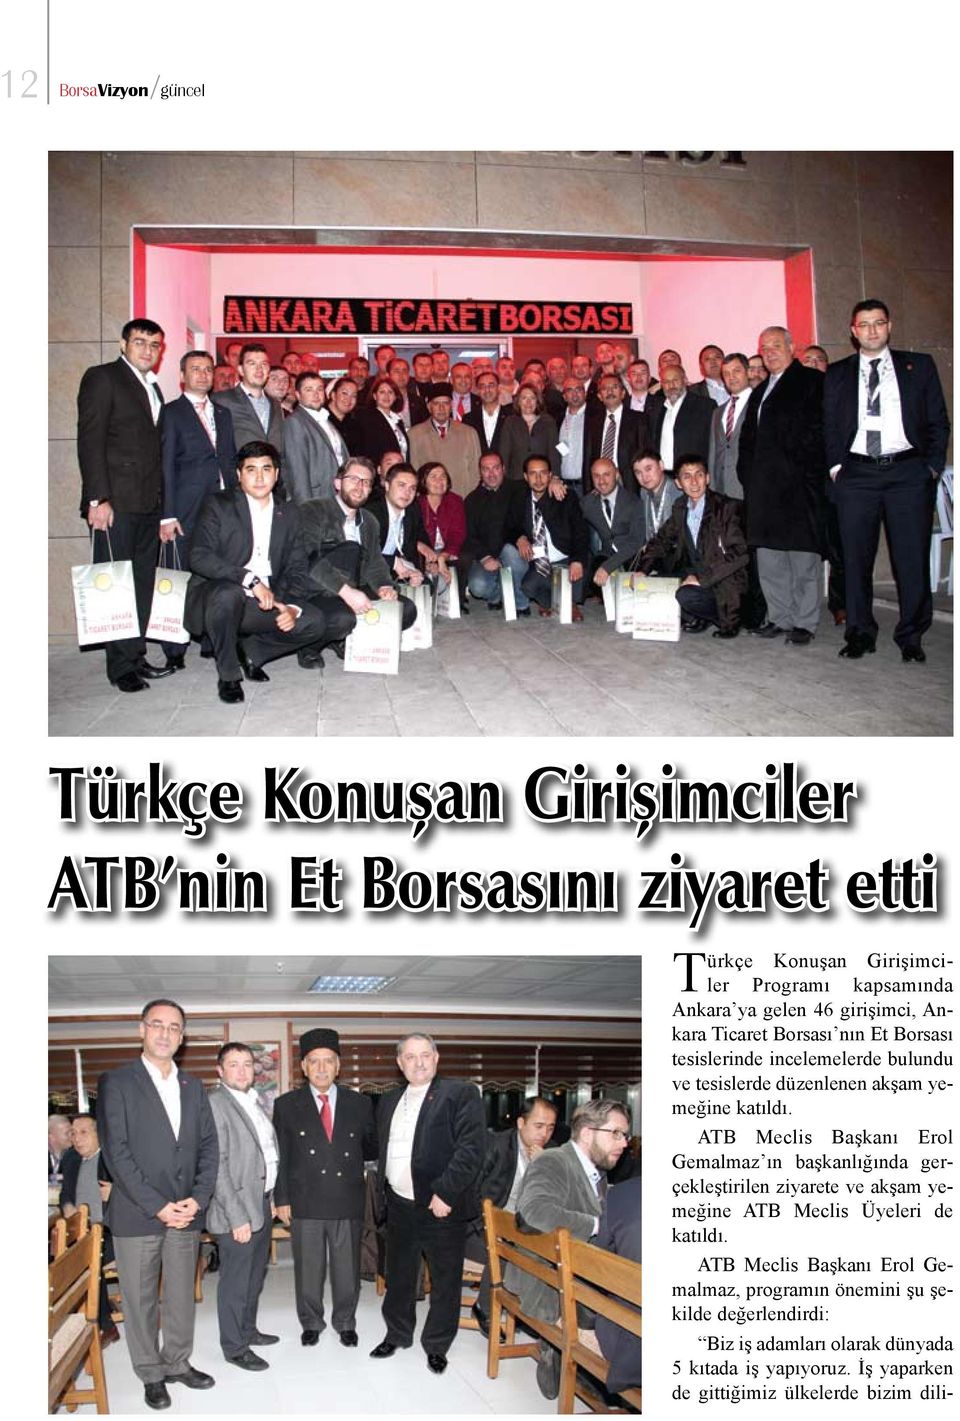 ATB Meclis Başkanı Erol Gemalmaz ın başkanlığında gerçekleştirilen ziyarete ve akşam yemeğine ATB Meclis Üyeleri de katıldı.